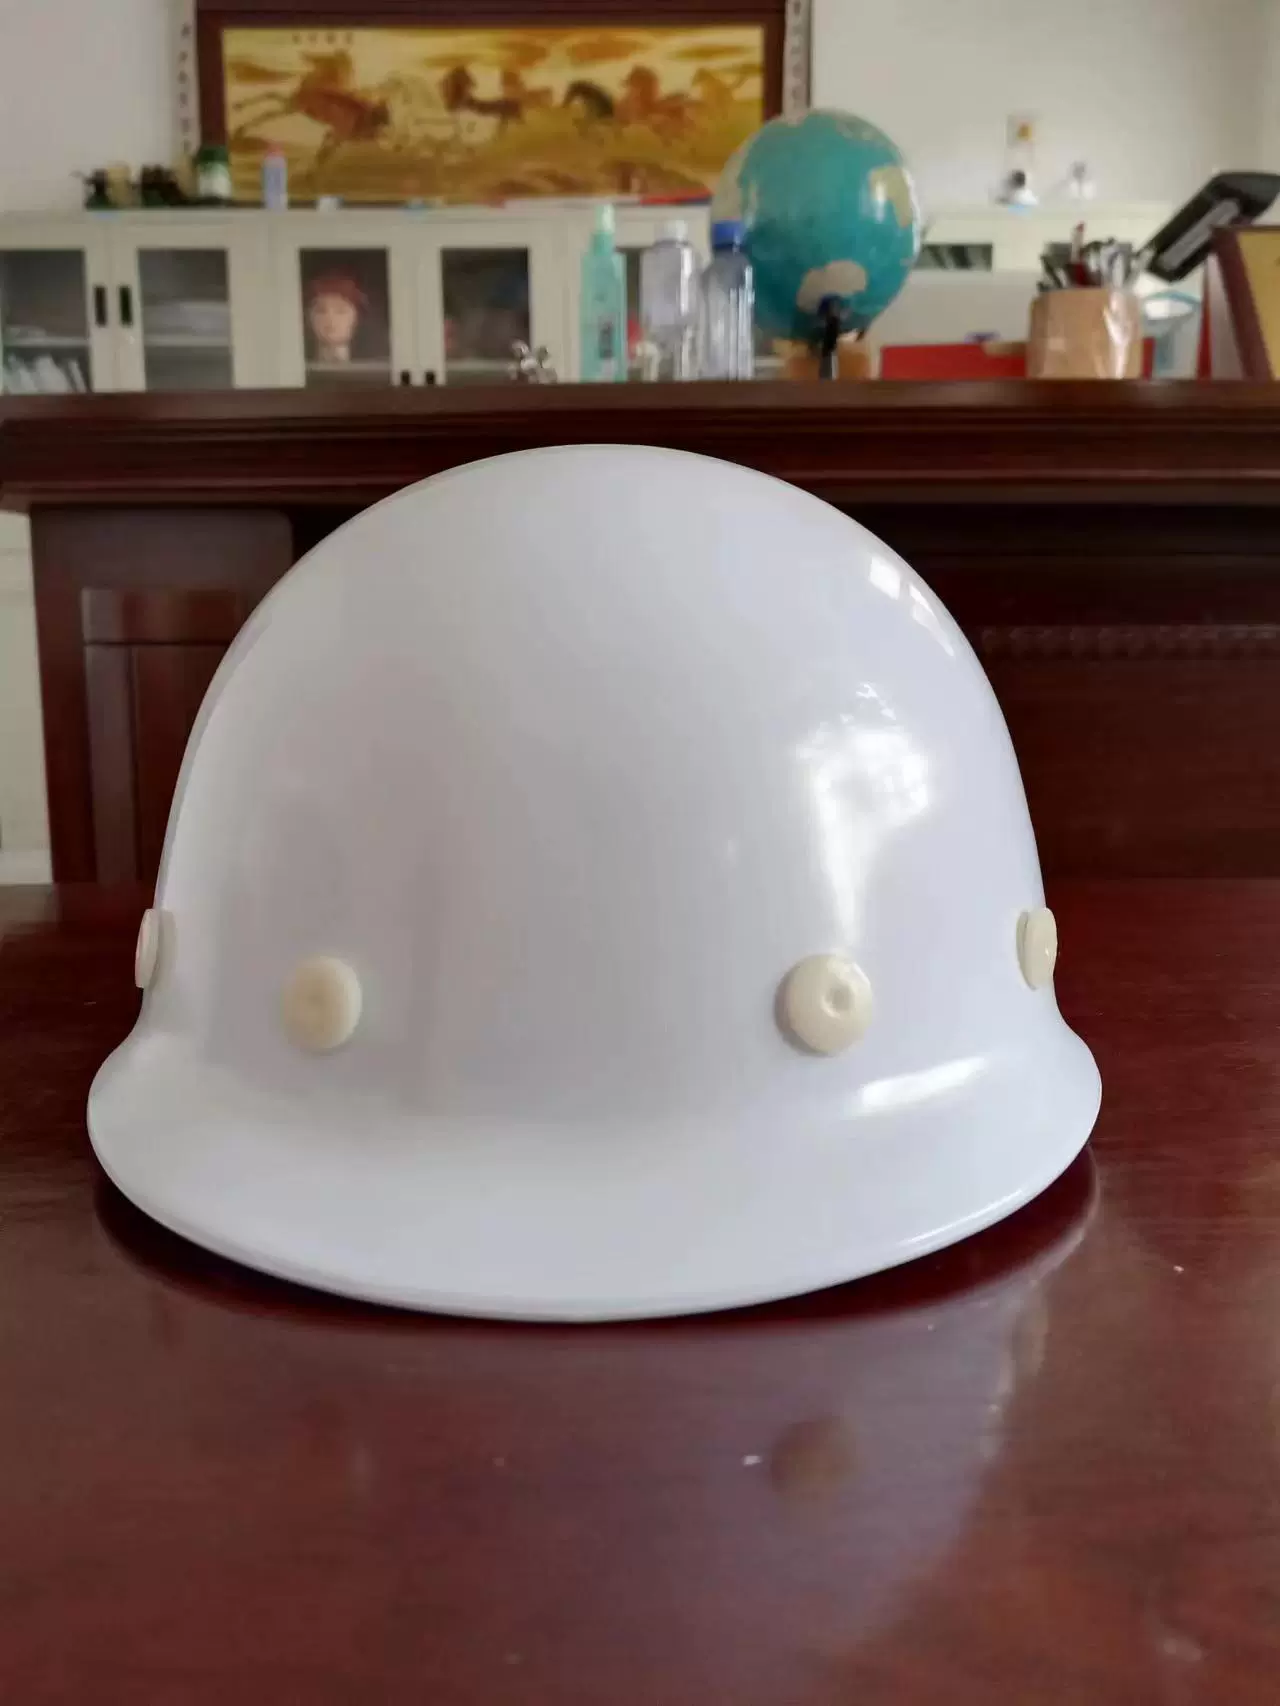 Mũ bảo hiểm công trường Mũ bảo hiểm nhựa nội địa Clean nhãn hiệu 014 C dây đeo đơn một nút bấm mũ bảo hộ có kính mũ bảo hộ công trường 